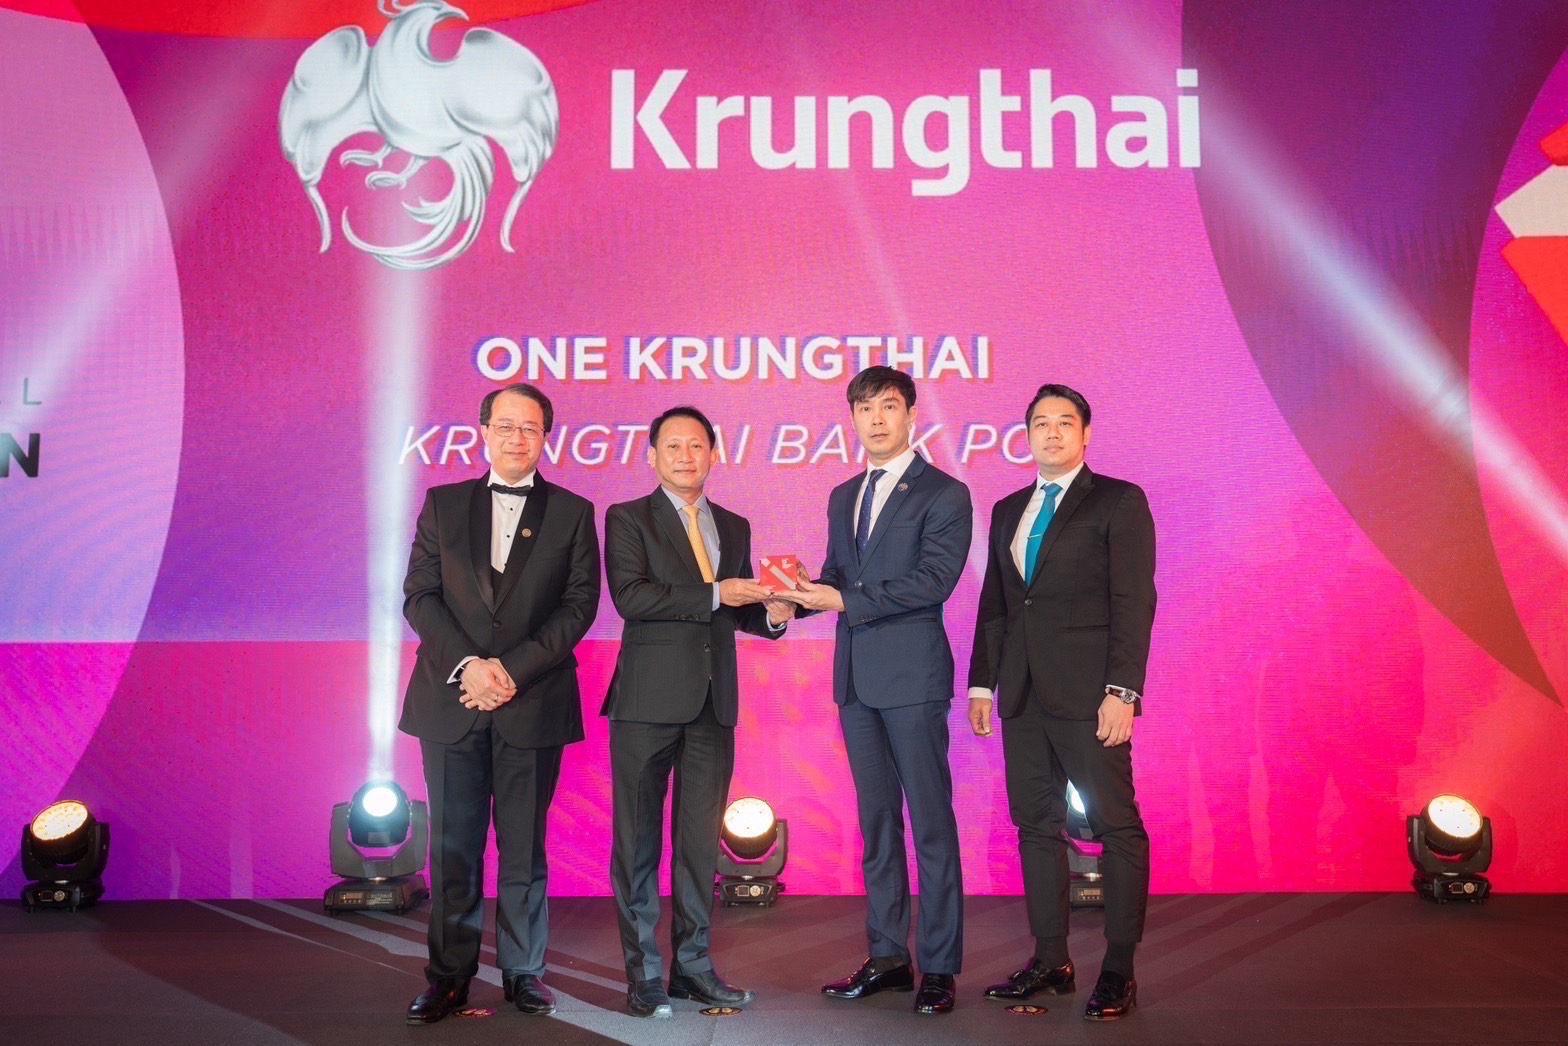 กรุงไทย ผงาดเวทีสากล โชว์ความสำเร็จแอปฯ ONE Krungthai คว้า 2 รางวัลใหญ่ ตอกย้ำซูเปอร์แอป ของไทย มุ่งขับเคลื่อนสู่องค์กรดิจิทัล